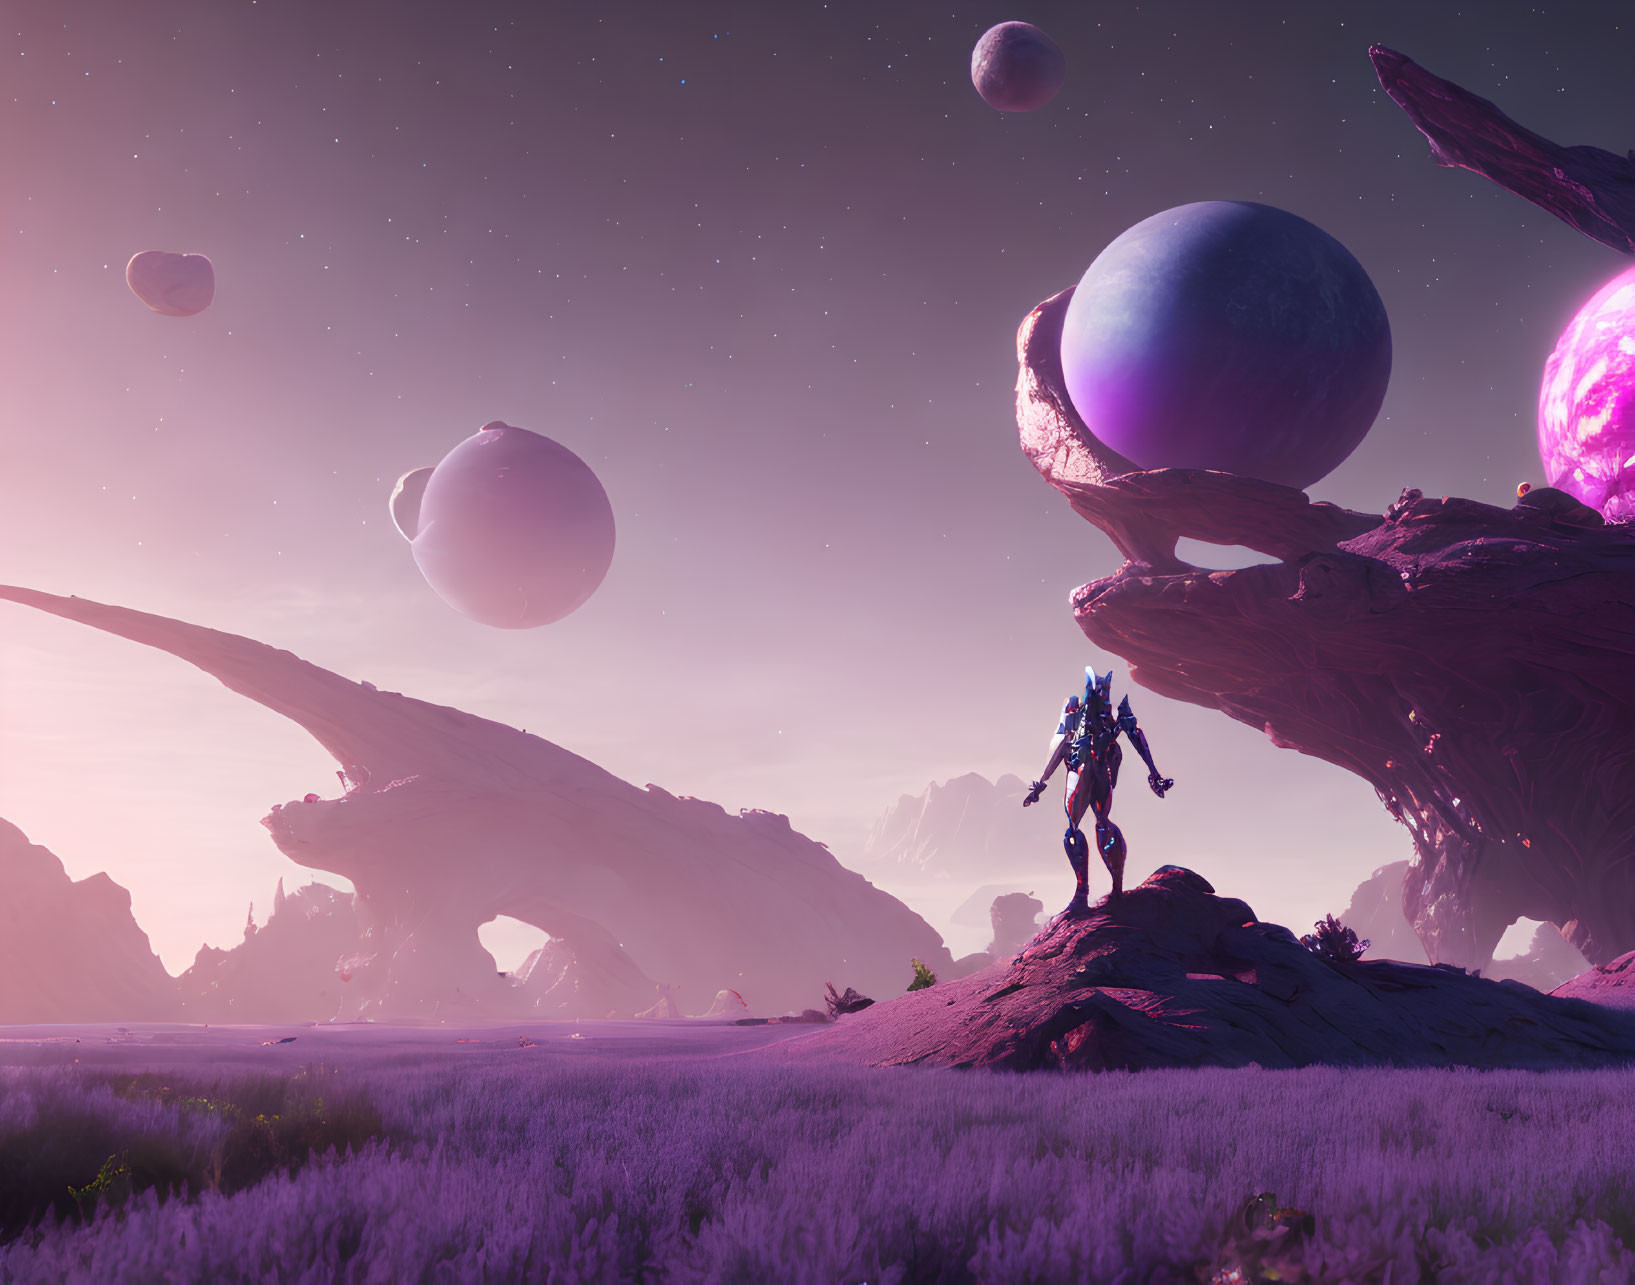 Futuristic armored figure on purple alien landscape